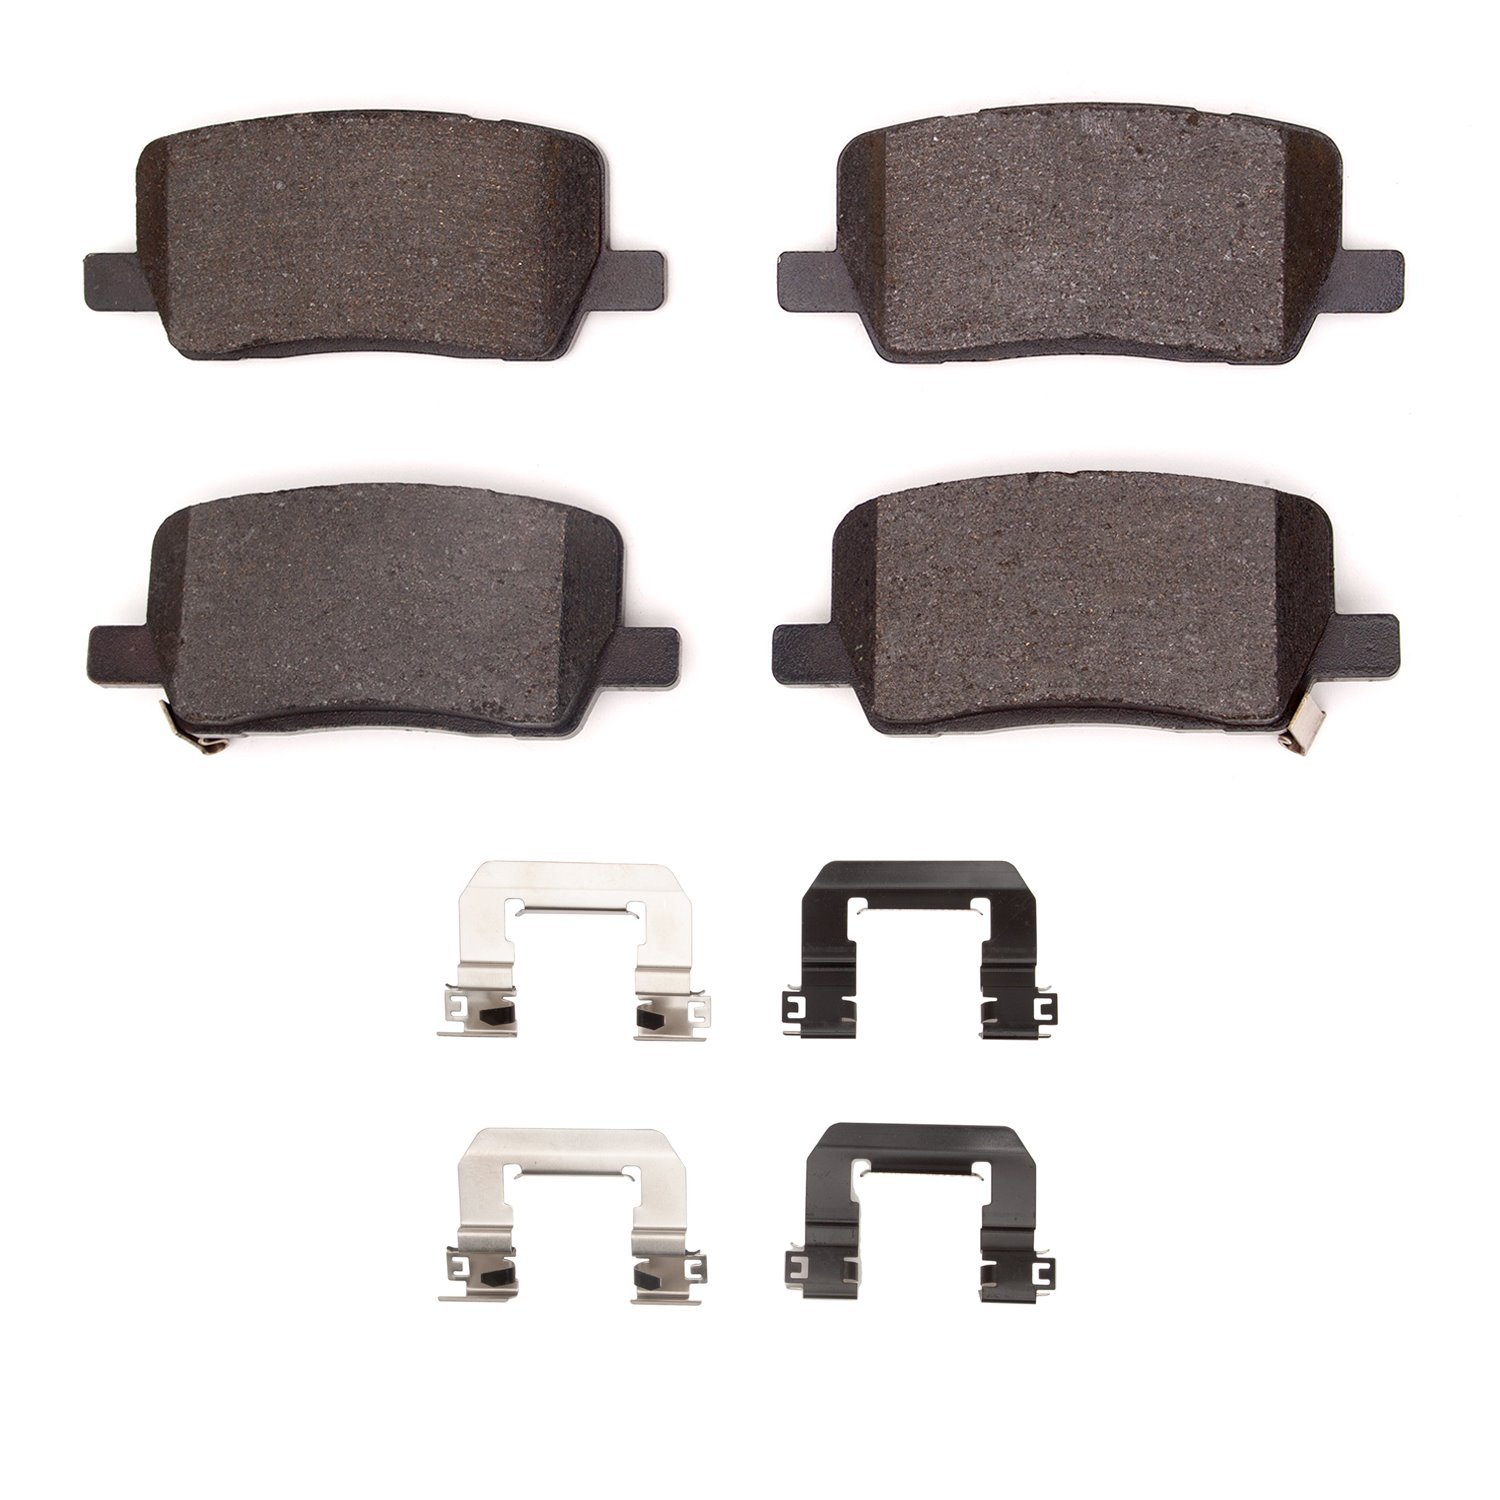 1311-2164-01 3000-Series Semi-Metallic Brake Pads & Hardware Kit, Fits Select Tesla, Position: Rear